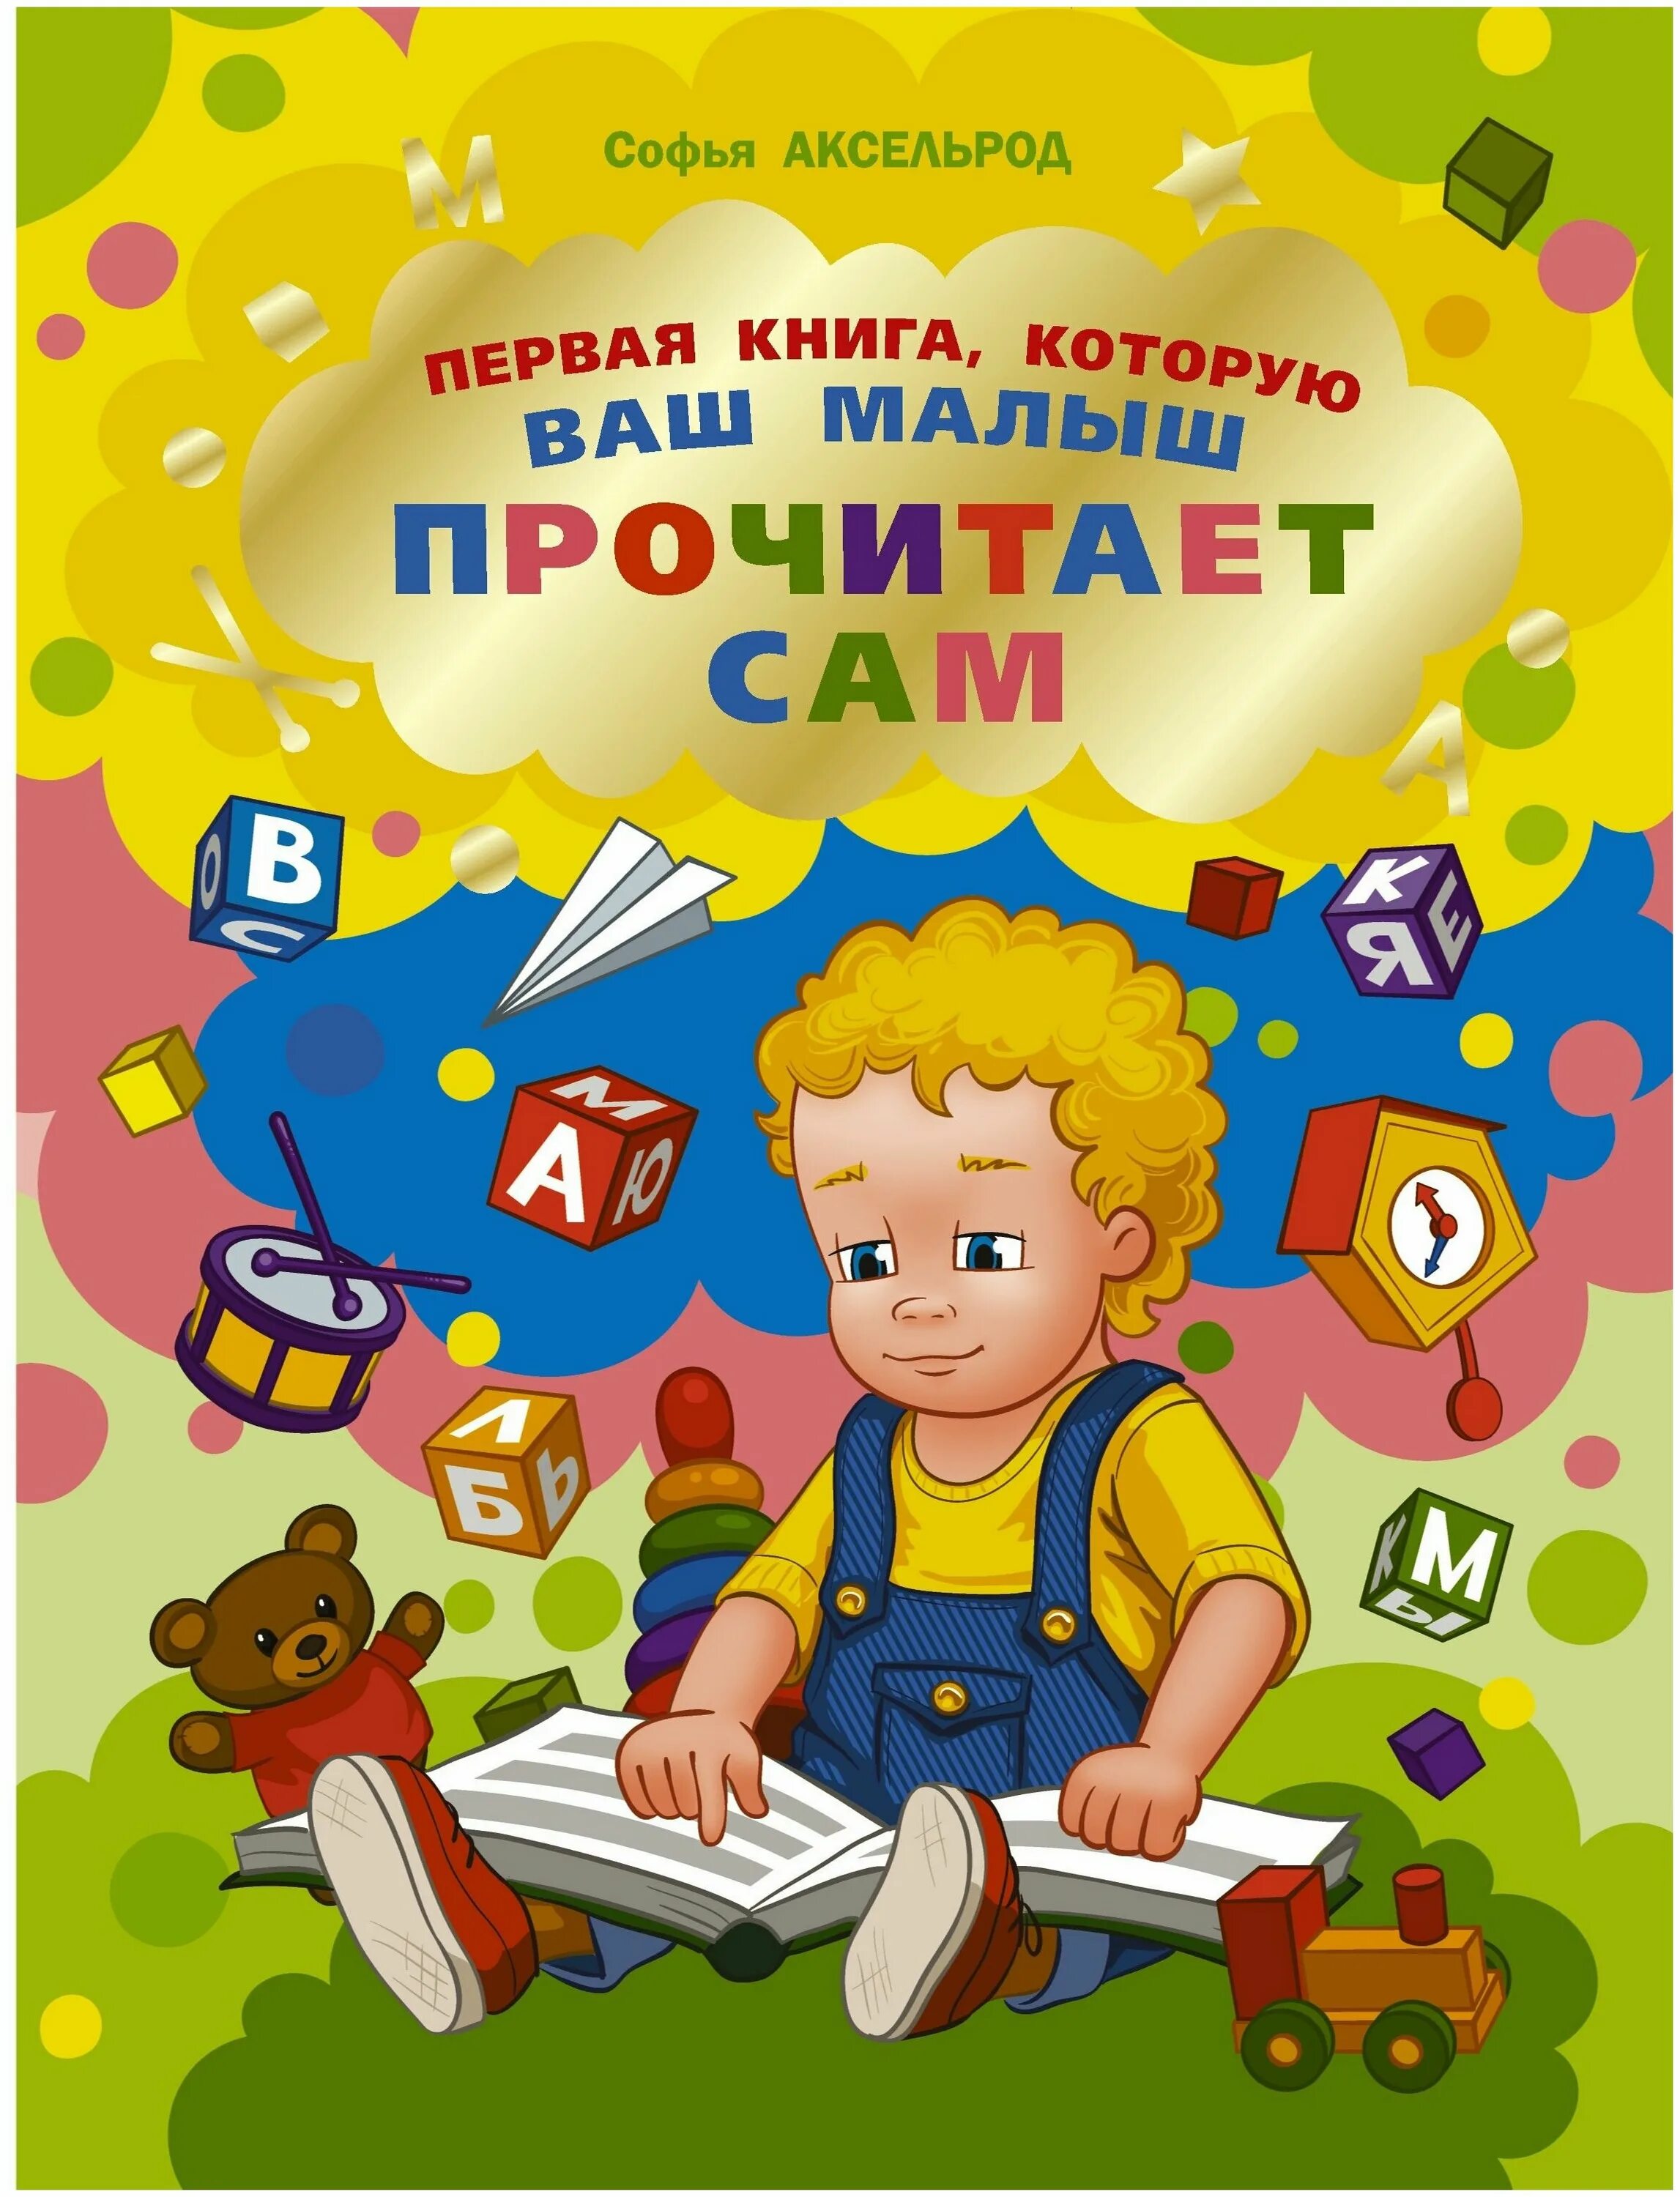 Читать малышам 4 года. Ребенок читает книгу. Книги для первого чтения детьми. Первая книга малыша. Книжка про вашего ребенка.